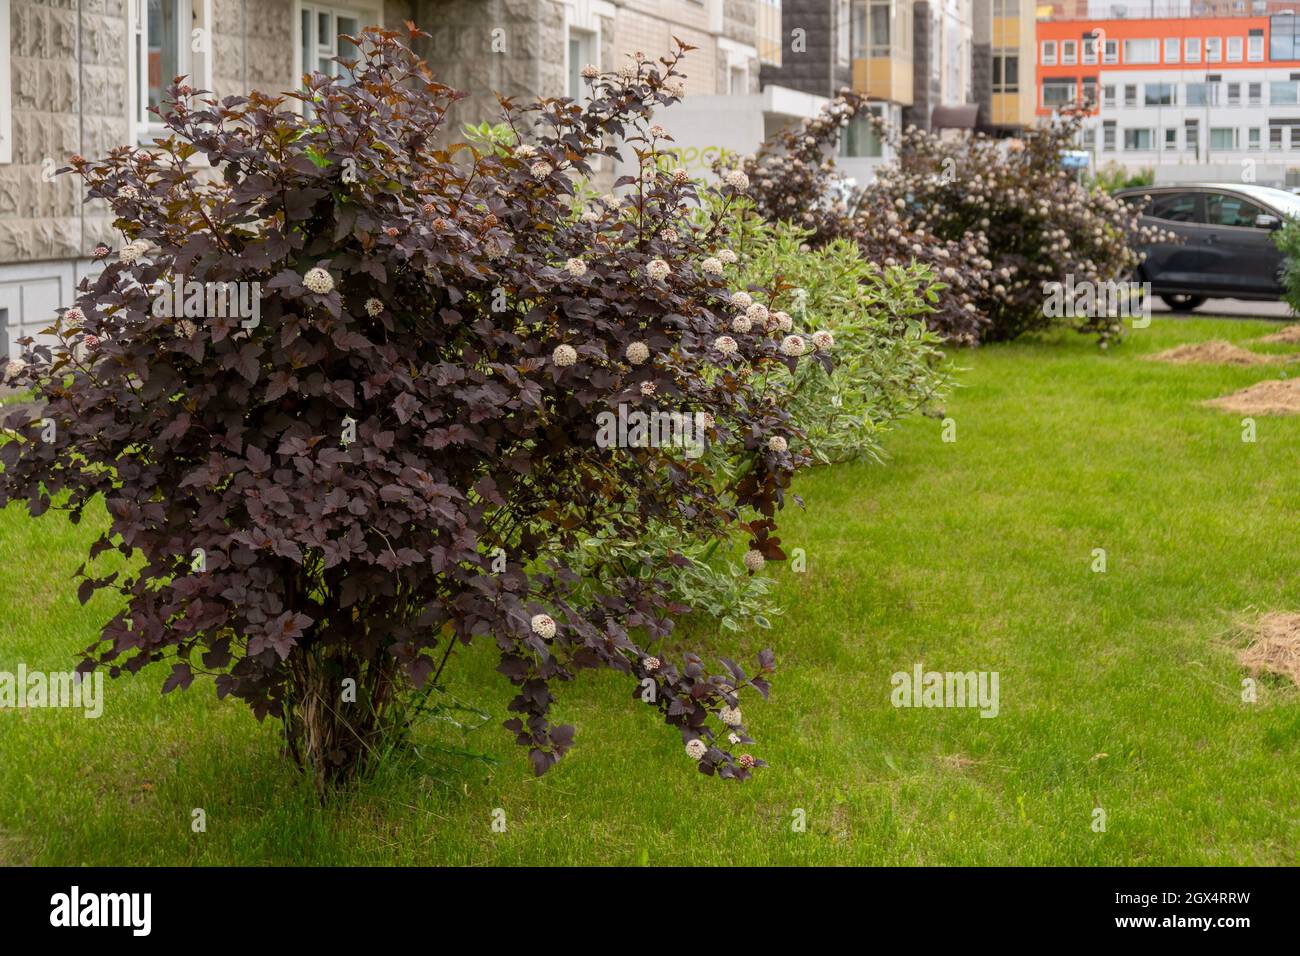 Blühende Büsche der Ziergartenspie, der sich auf einem Summ in der Stadt befindet, wachsen mit dunklen burgunderroten Blättern vor einem Wohngebäude Stockfoto